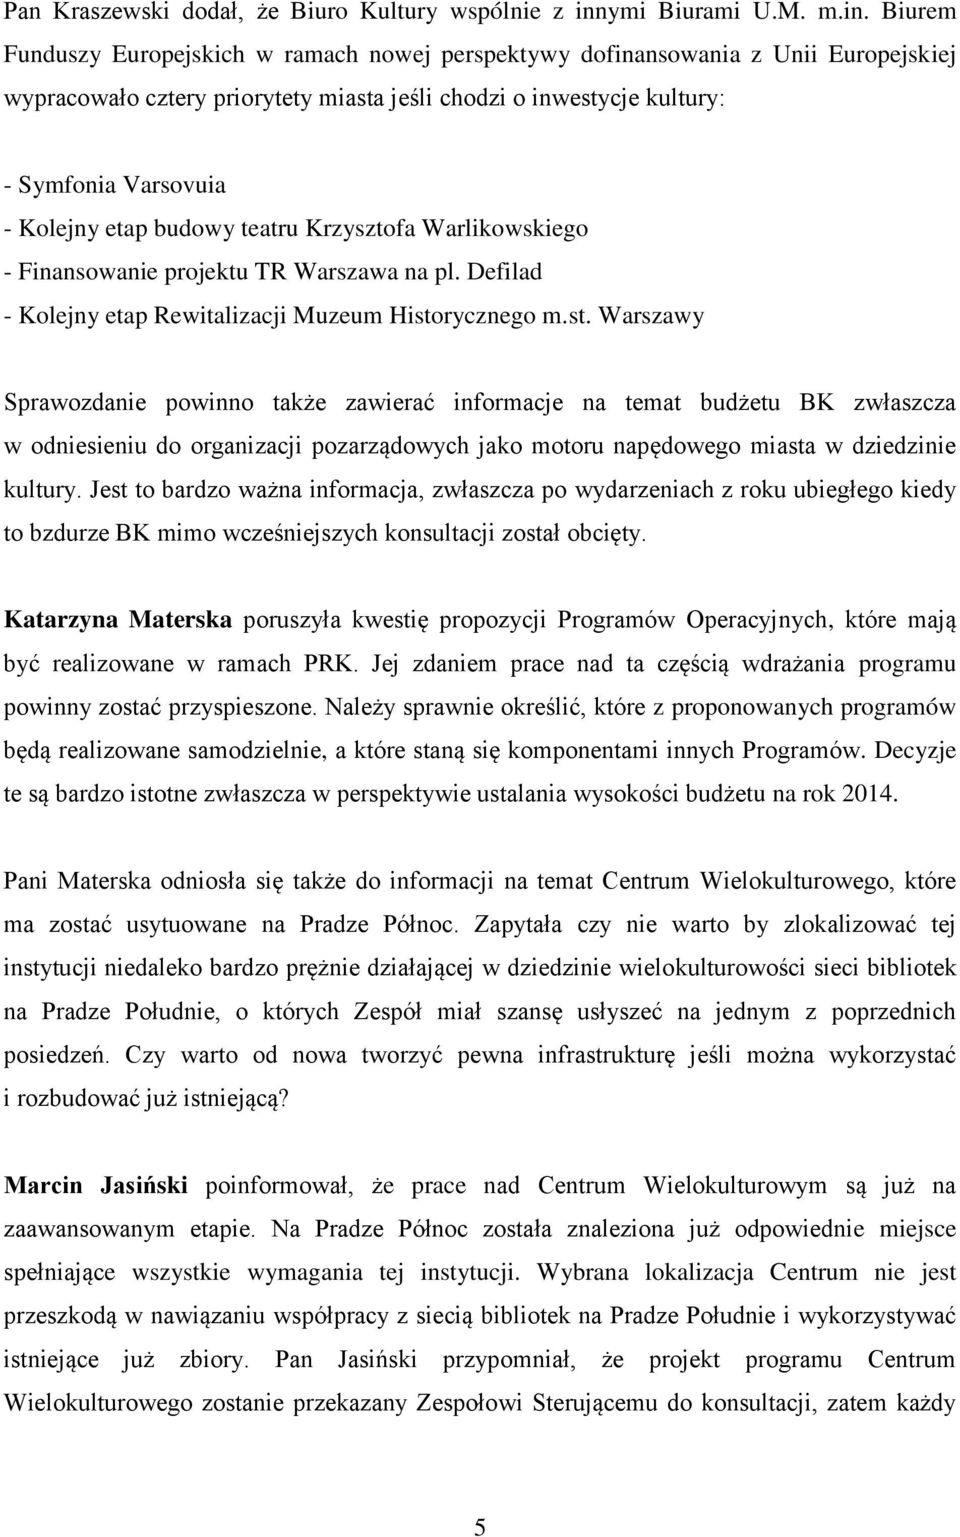 Biurem Funduszy Europejskich w ramach nowej perspektywy dofinansowania z Unii Europejskiej wypracowało cztery priorytety miasta jeśli chodzi o inwestycje kultury: - Symfonia Varsovuia - Kolejny etap